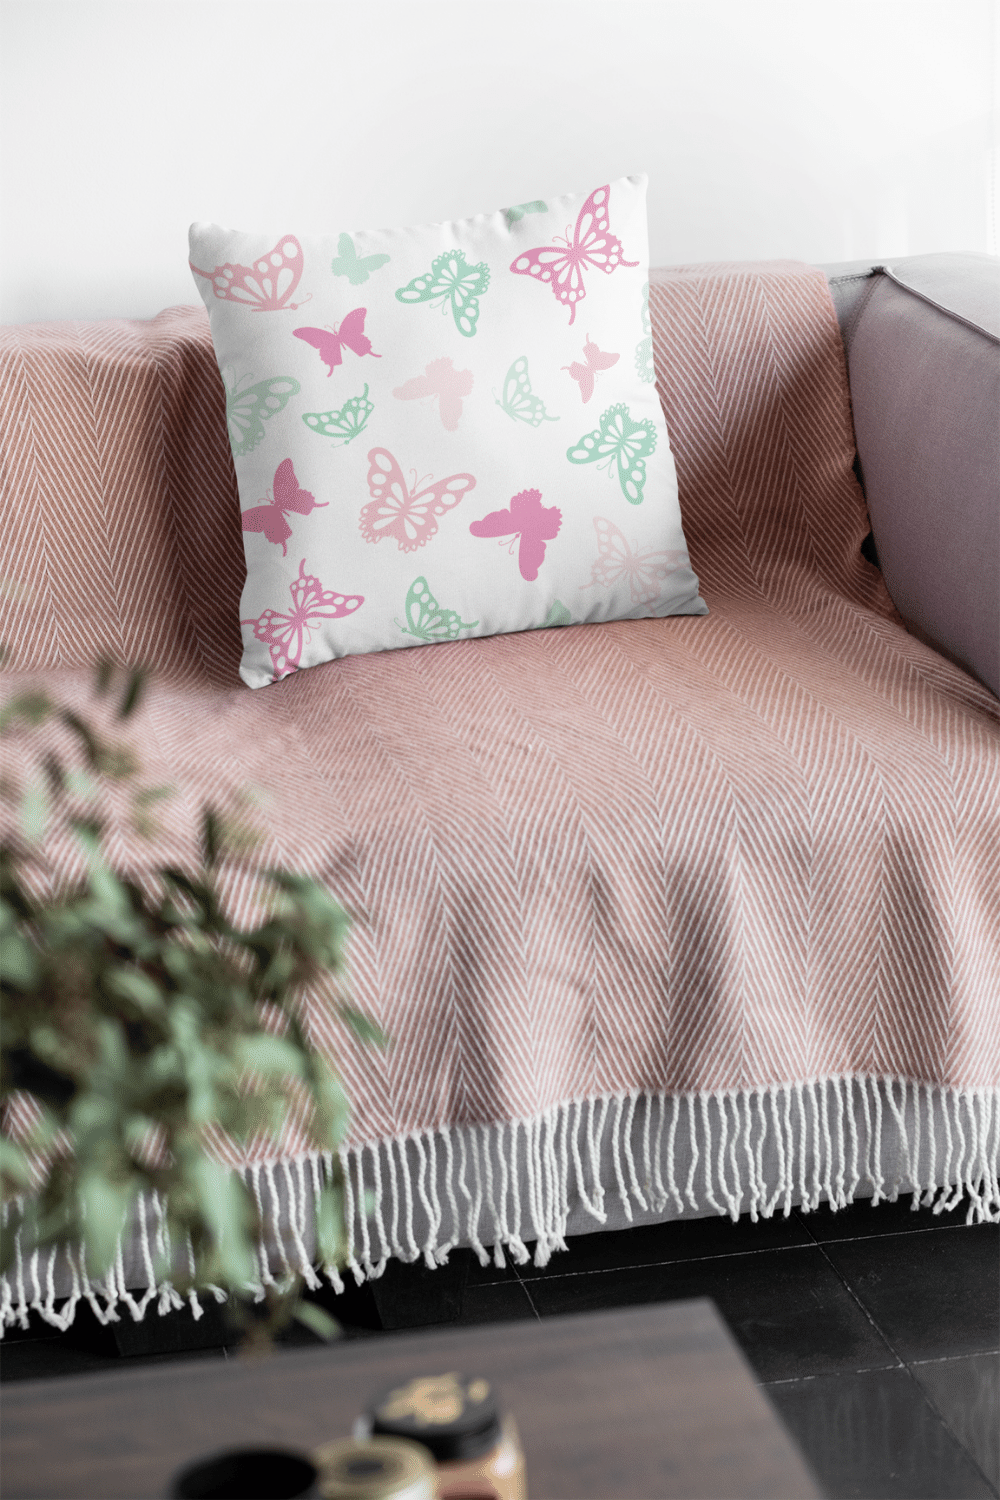 Pillows - Dorm Room Pillow - Pastel Butterflies